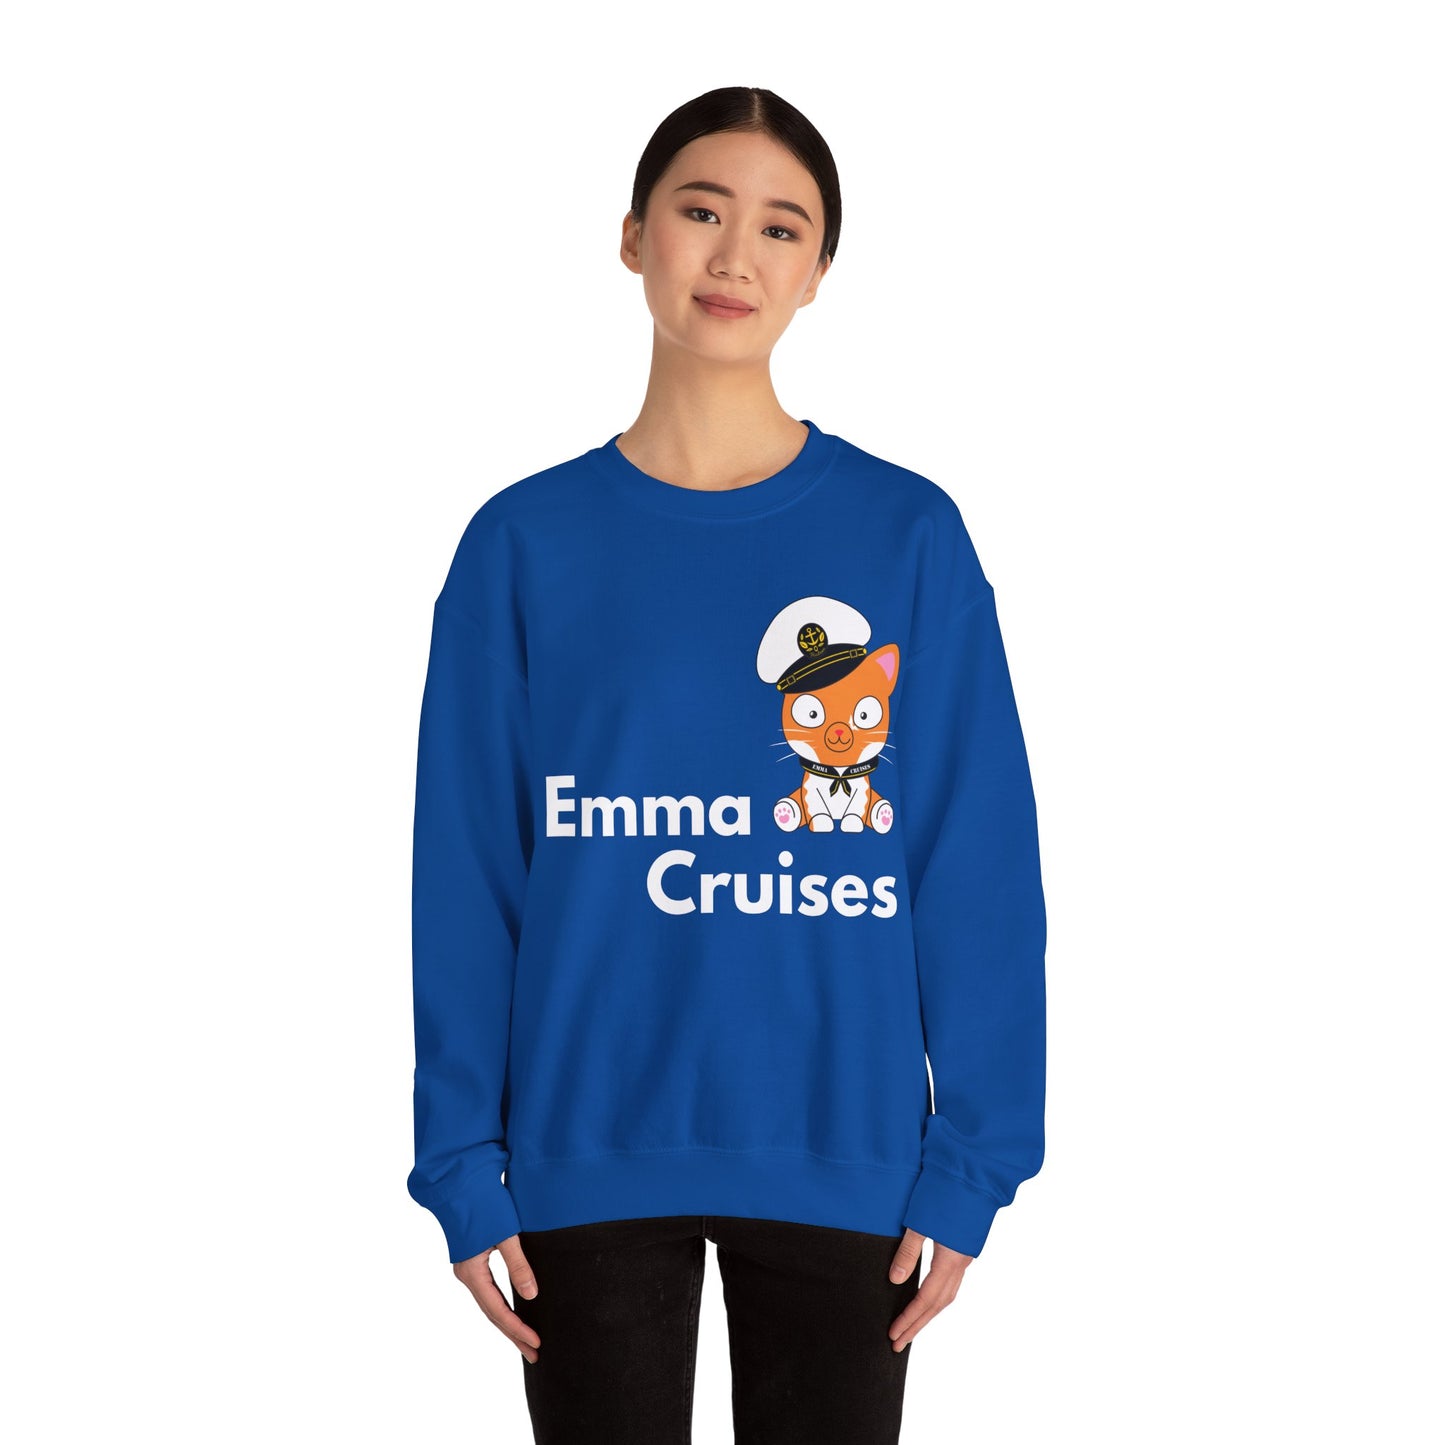 Emma Cruises - UNISEX Crewneck Sweatshirt